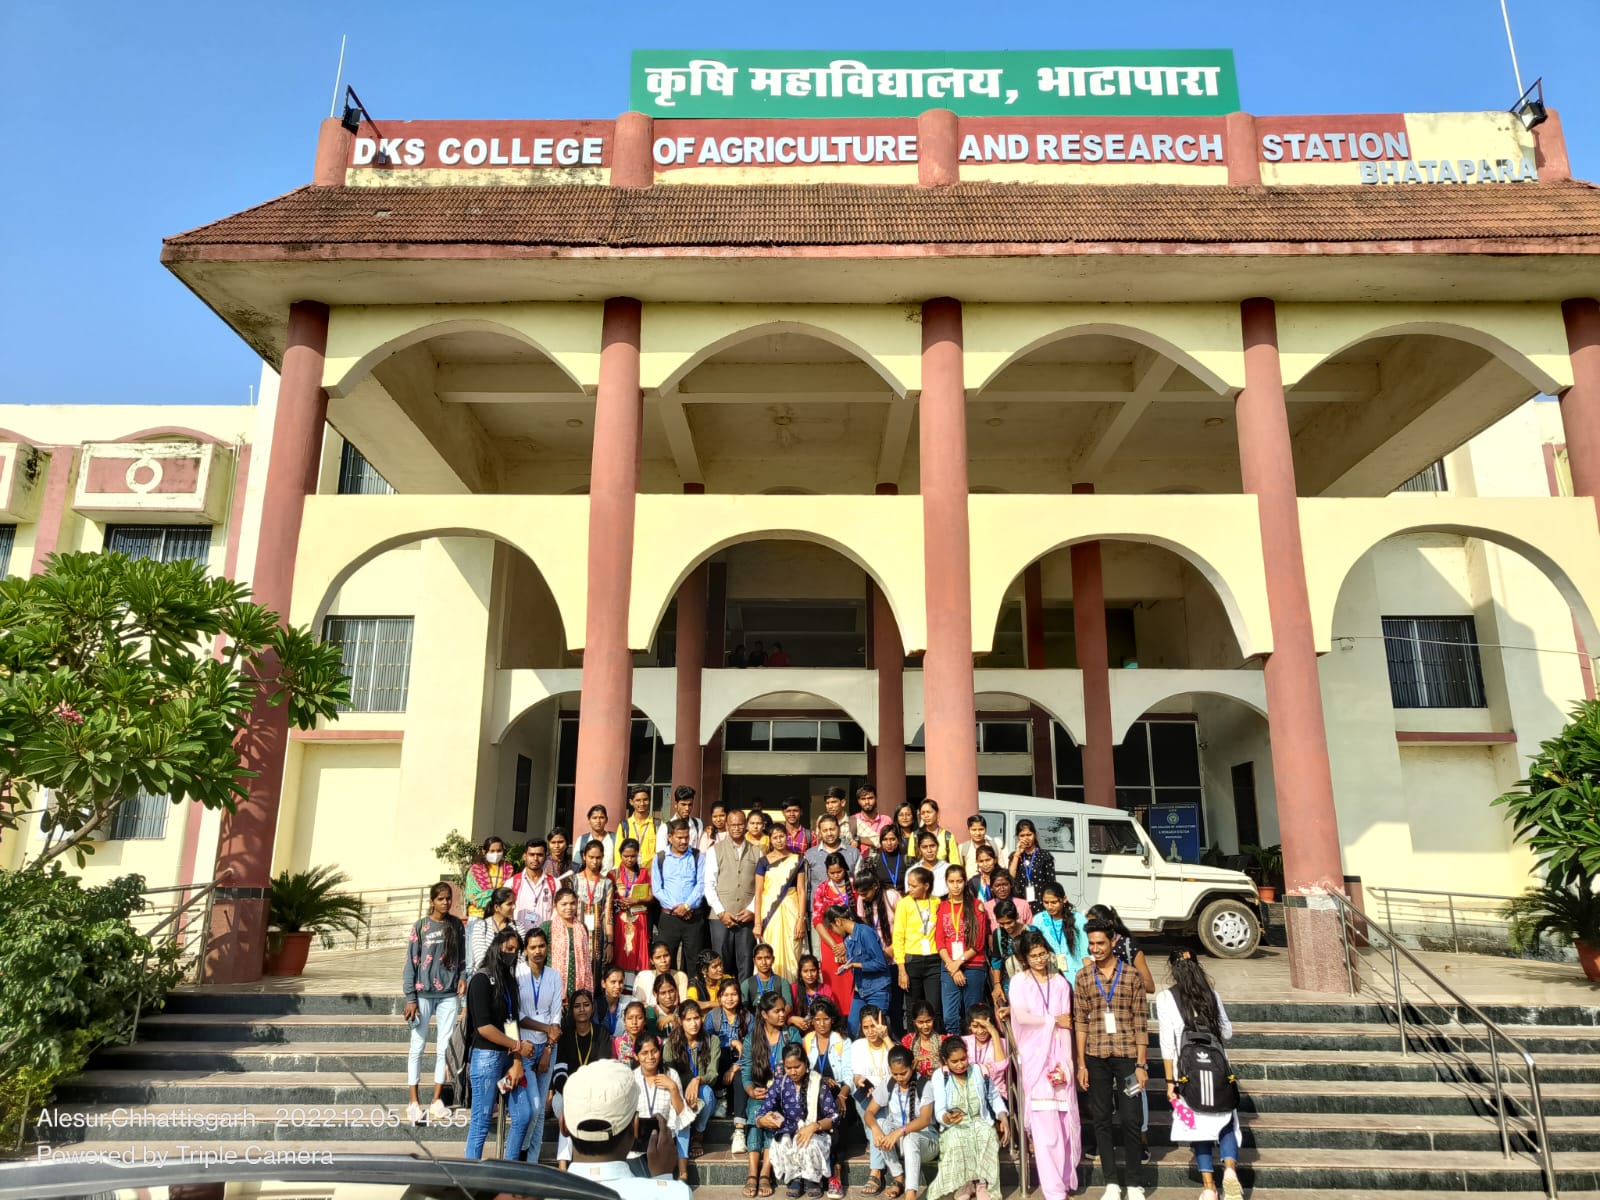 Mashroom culture training programme at Indira Gandhi Agriculture college Bhatapara